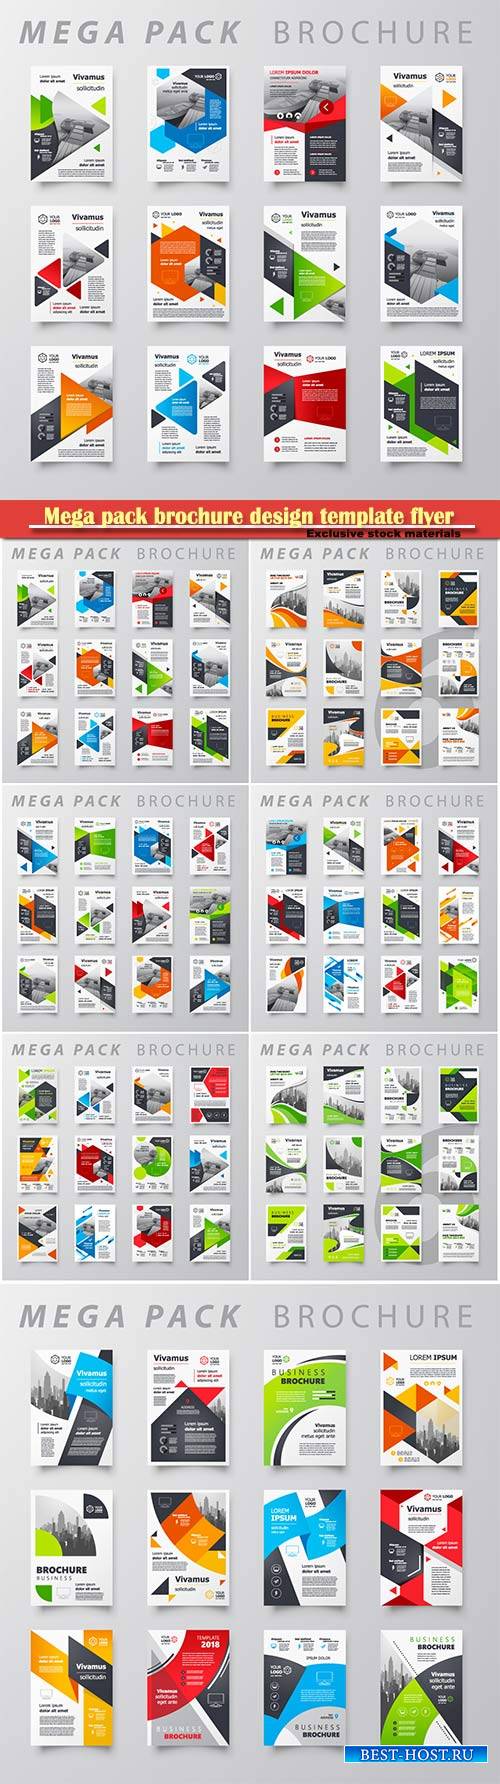 Mega pack brochure design template flyer vector set